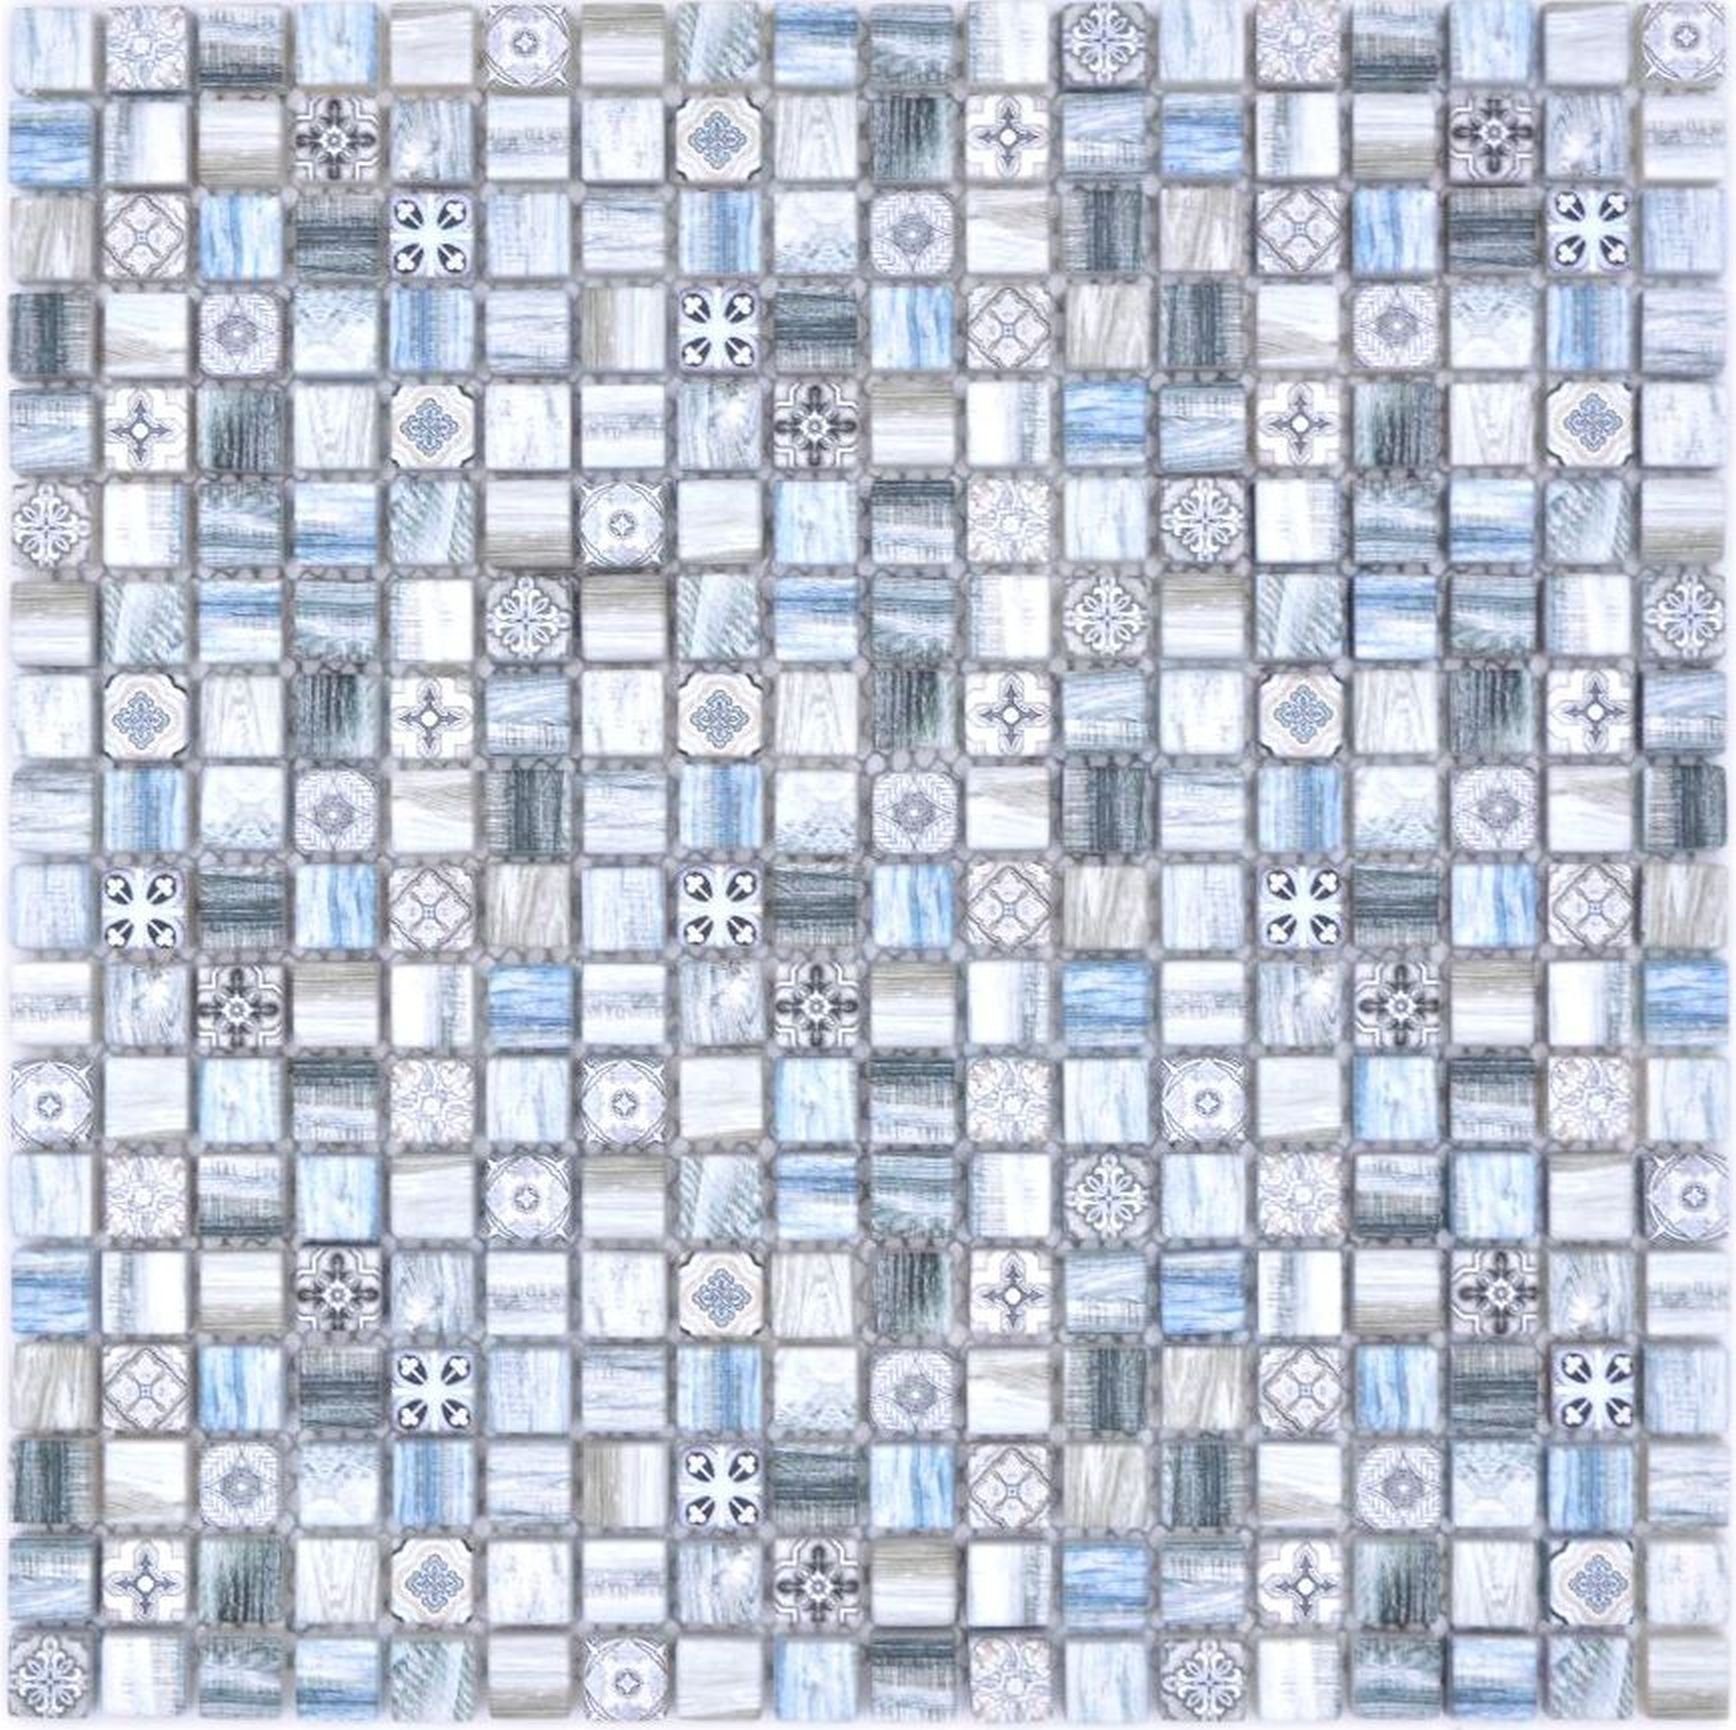 Mosani Mosaikfliesen Glasmosaik Mosaik Retro Holz Optik grau pastell blau hell